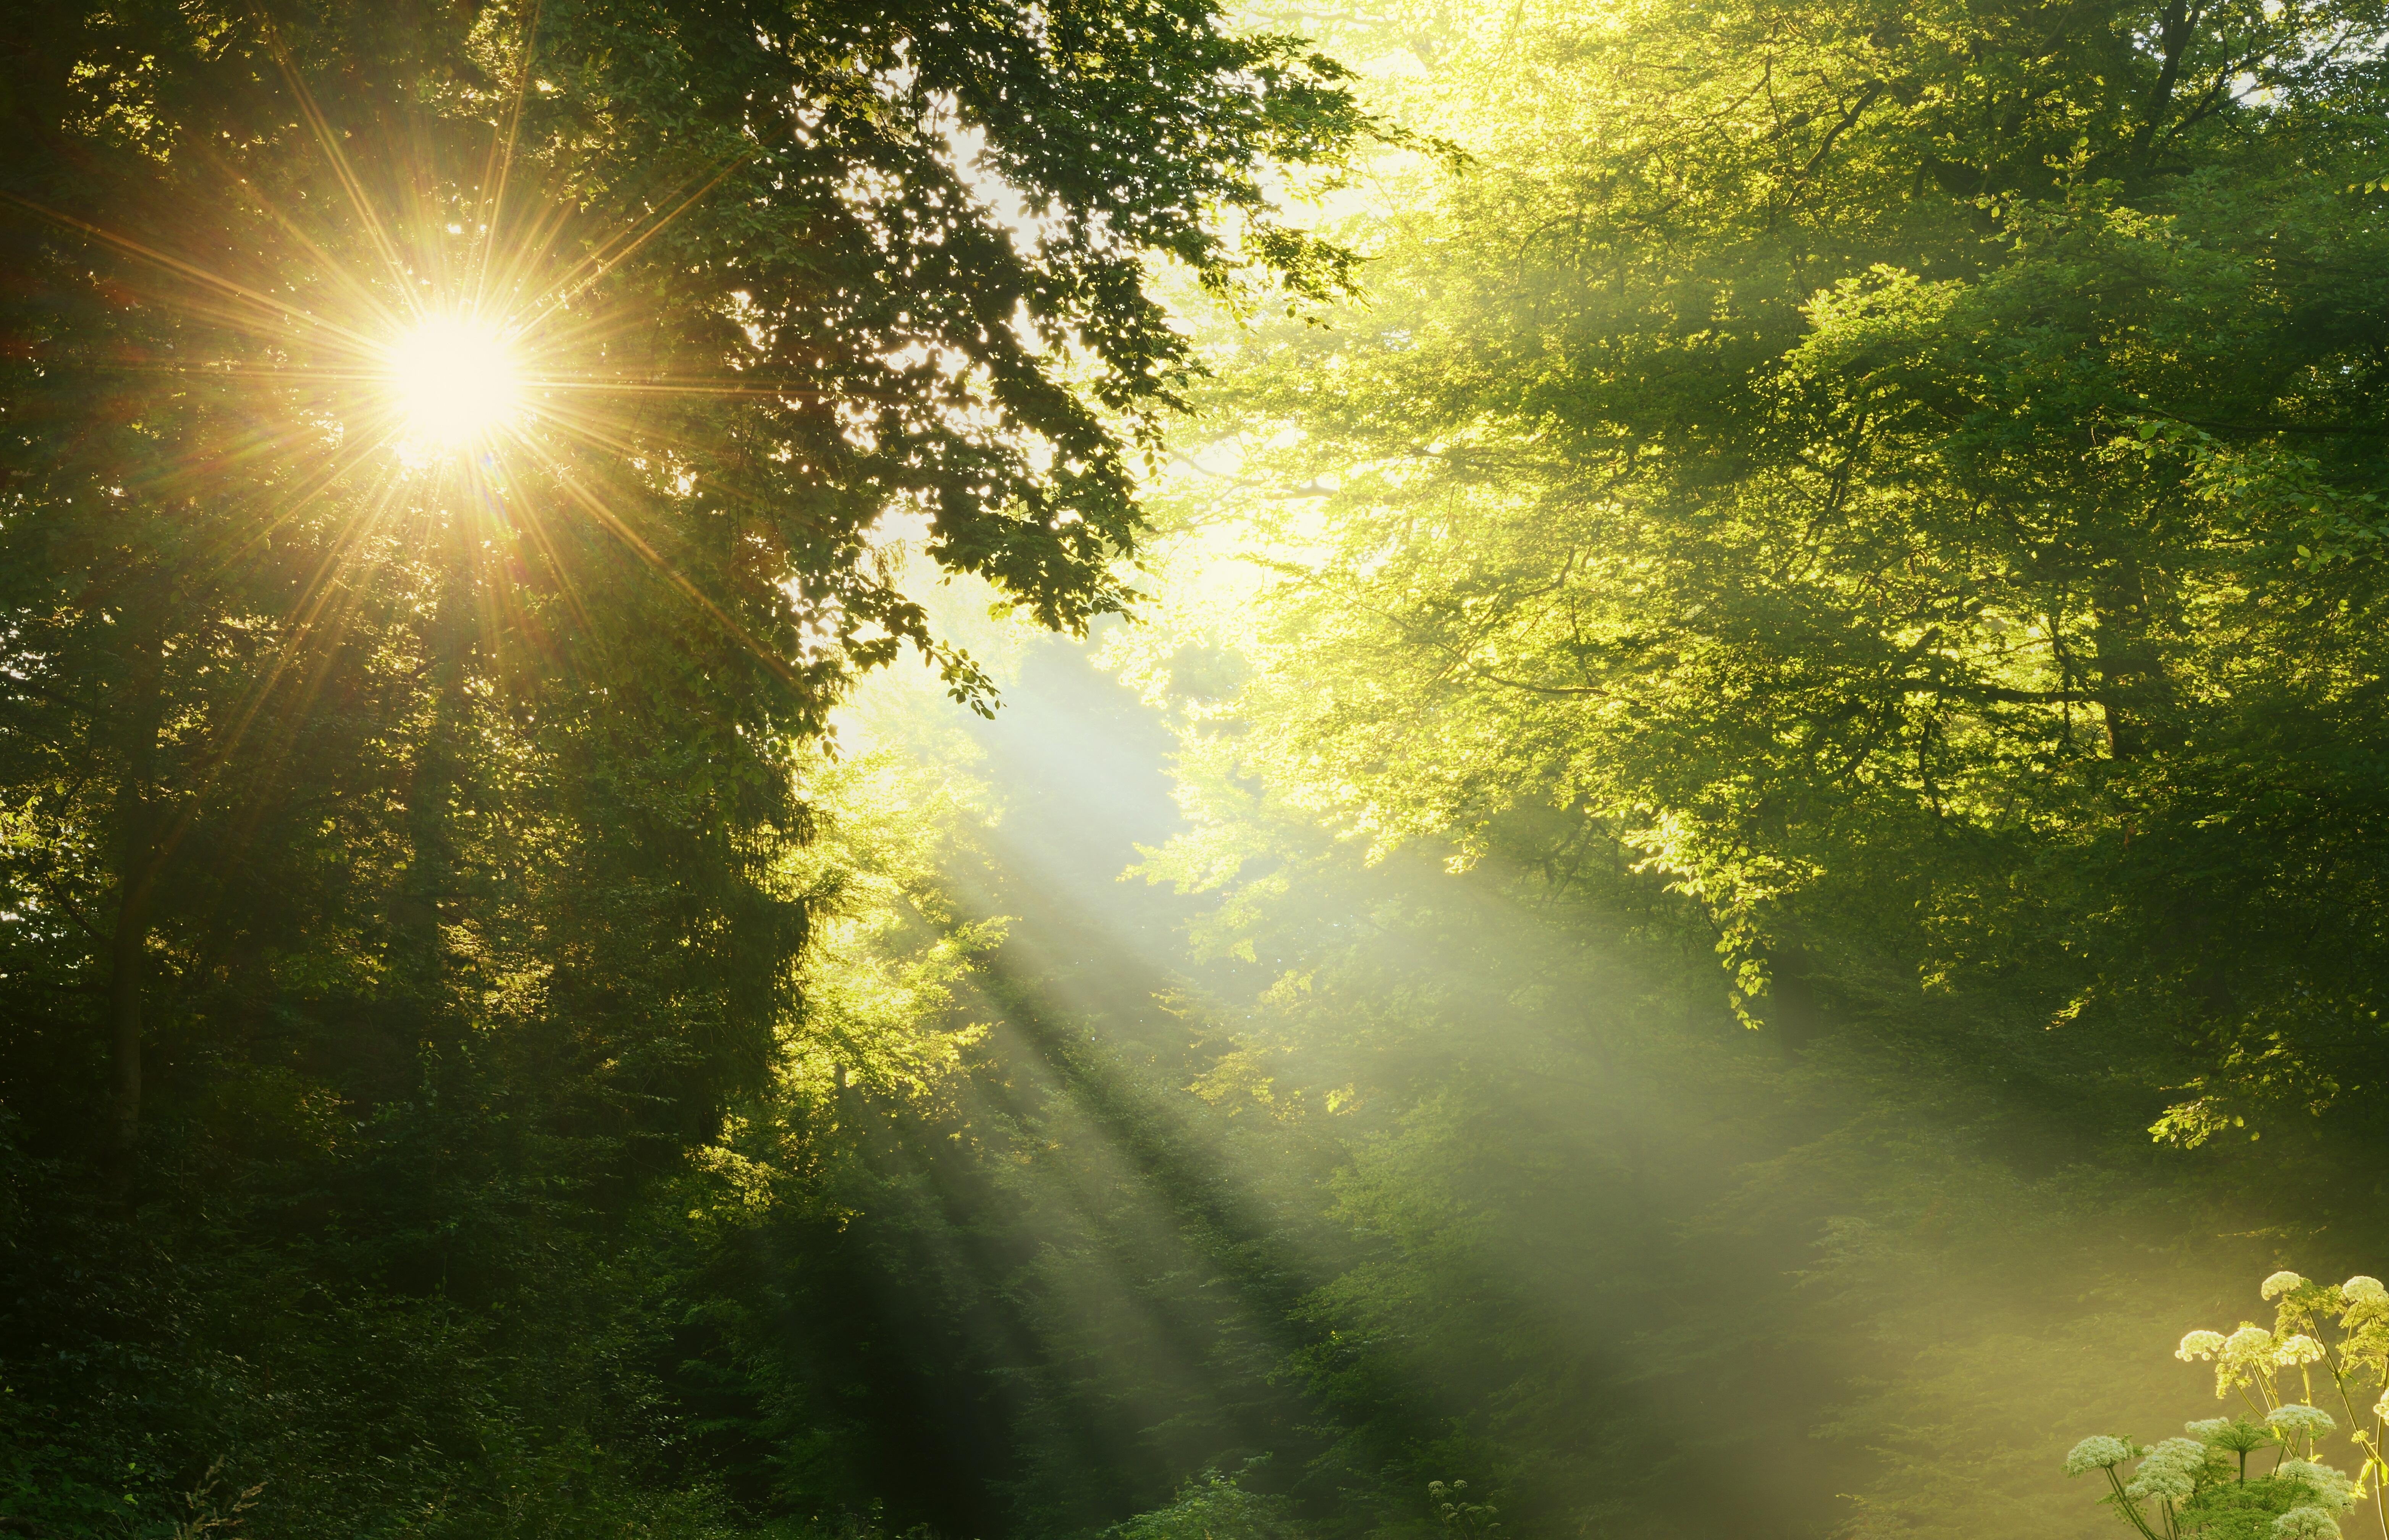 Лето это солнца луч. Лучи солнца. Природа солнце. Свет солнца. "Солнце в лесу".